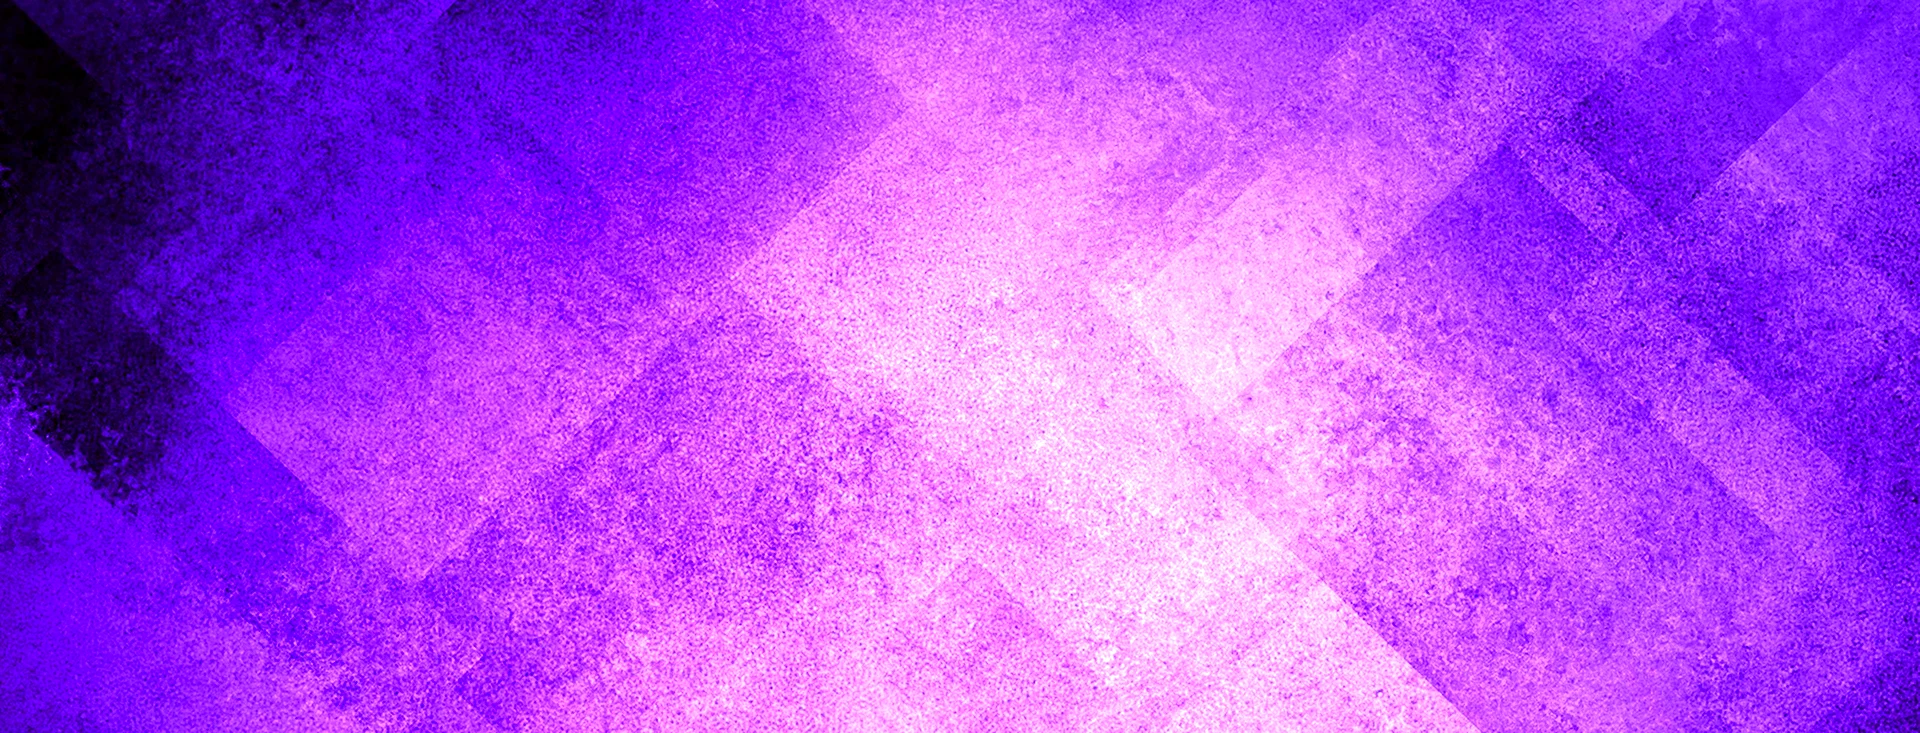 Пурпурная обложка